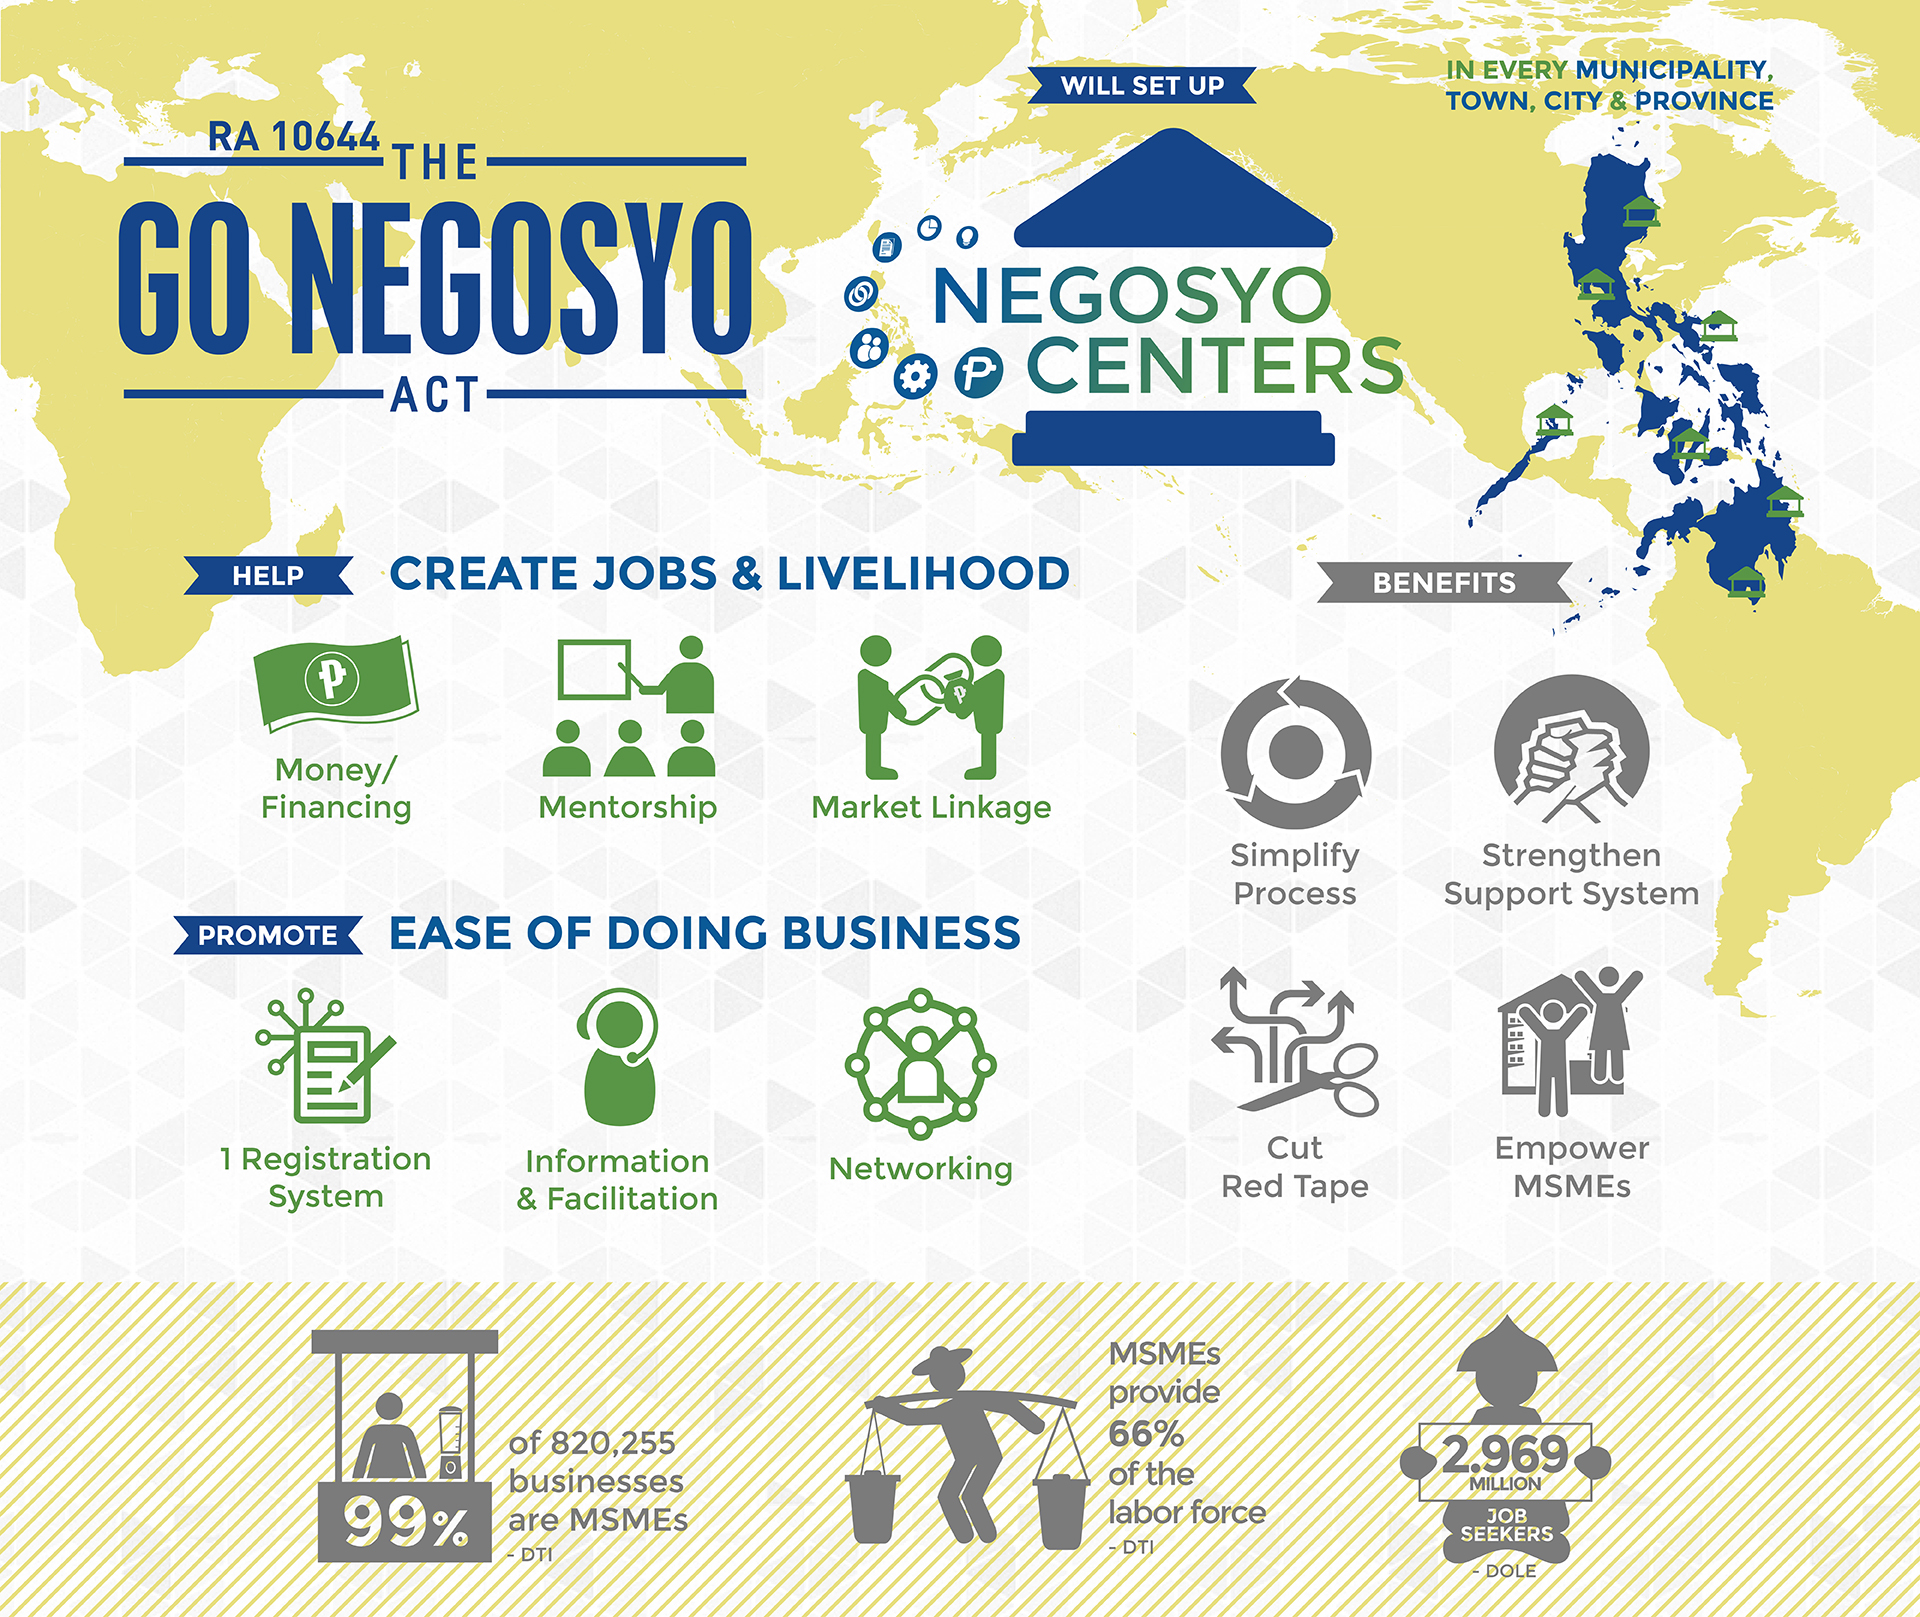 The Go Negosyo Act